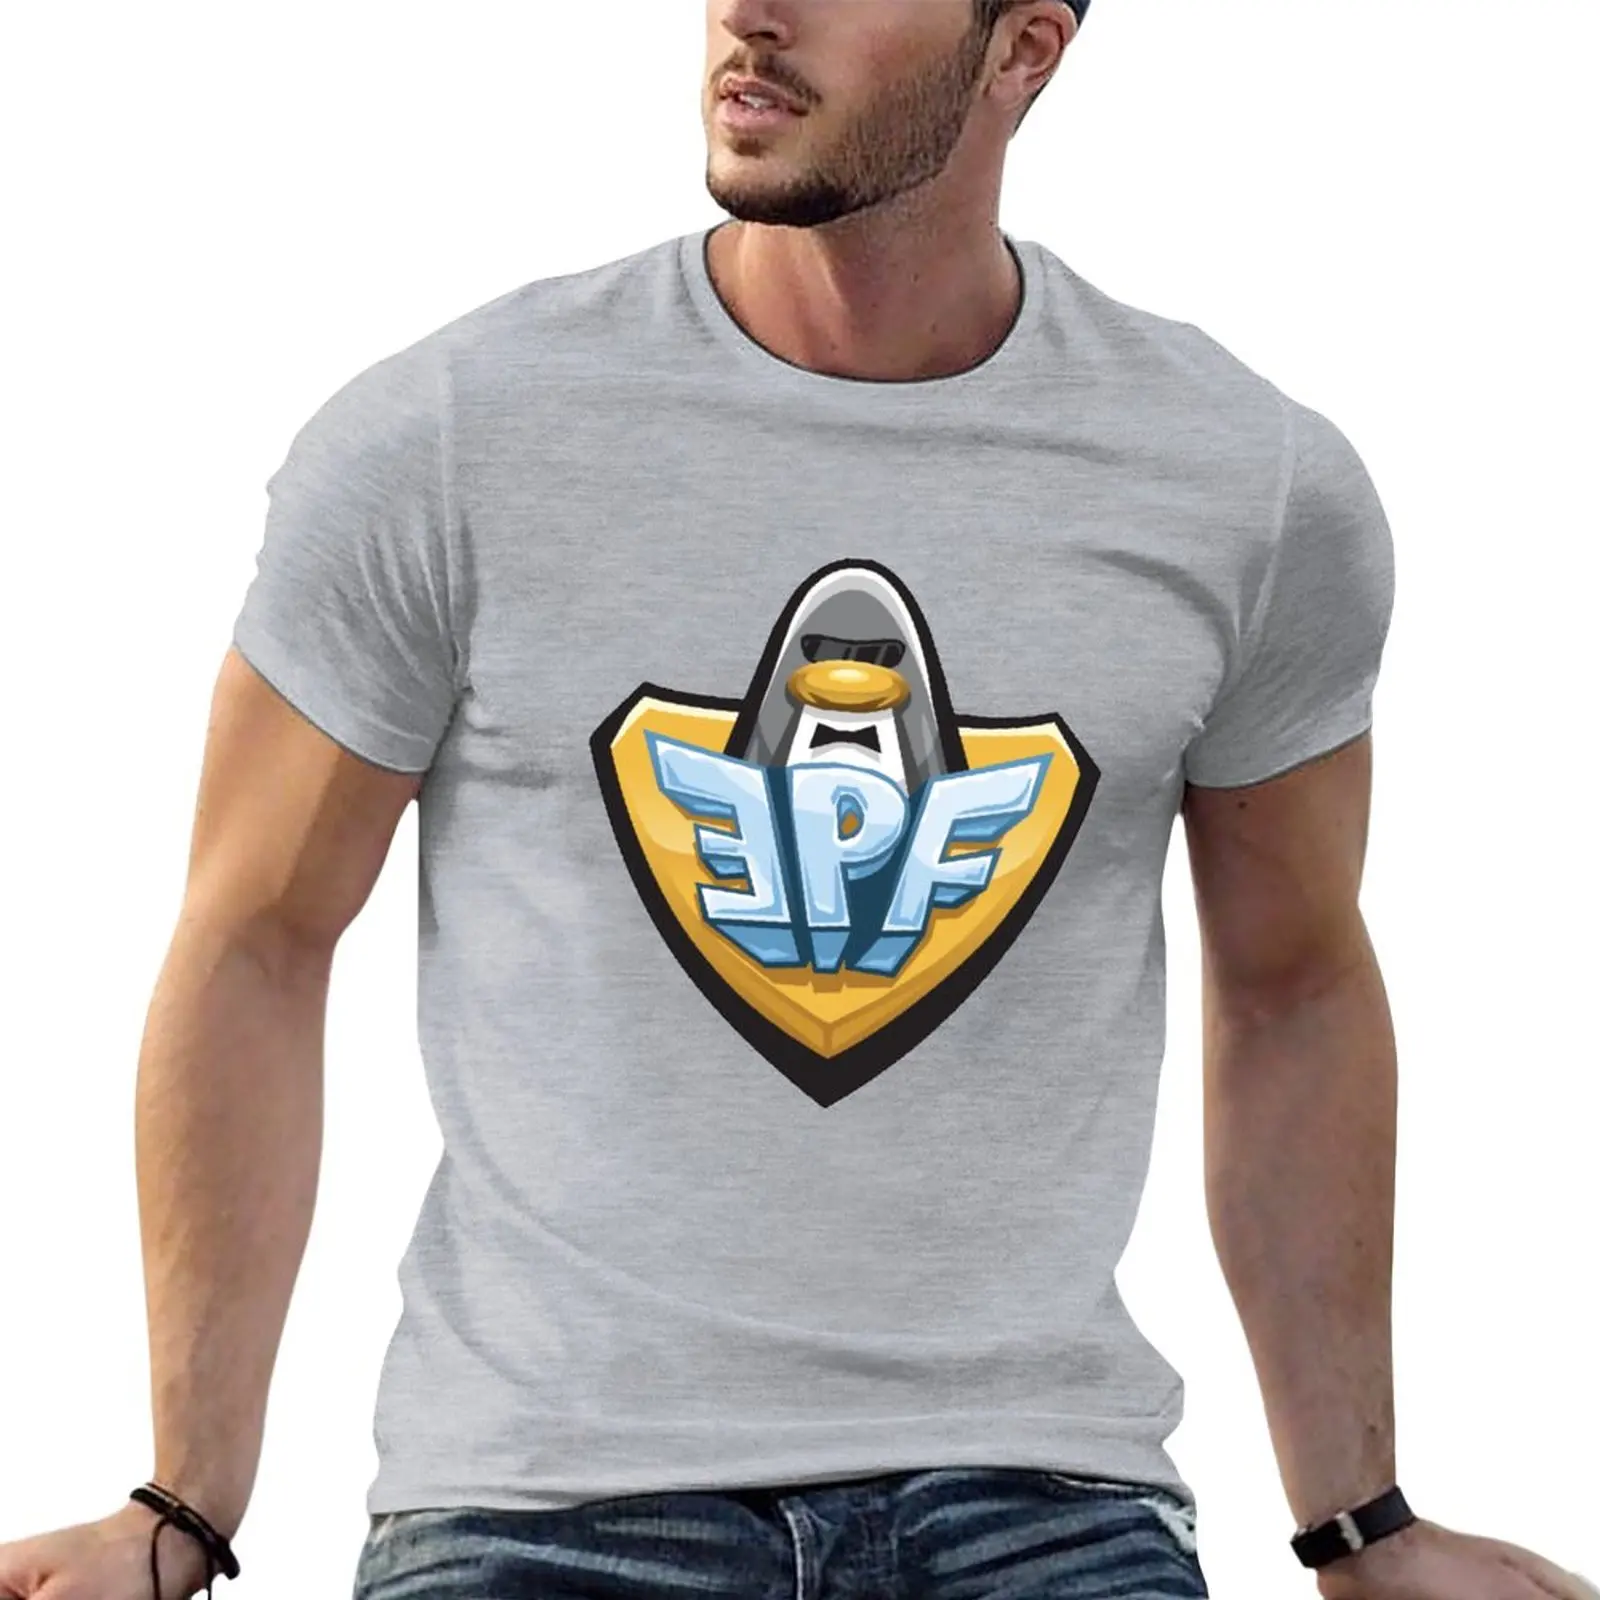 

Футболка с логотипом EPF, одежда в эстетике, милые топы, простая футболка, Мужская футболка с коротким рукавом